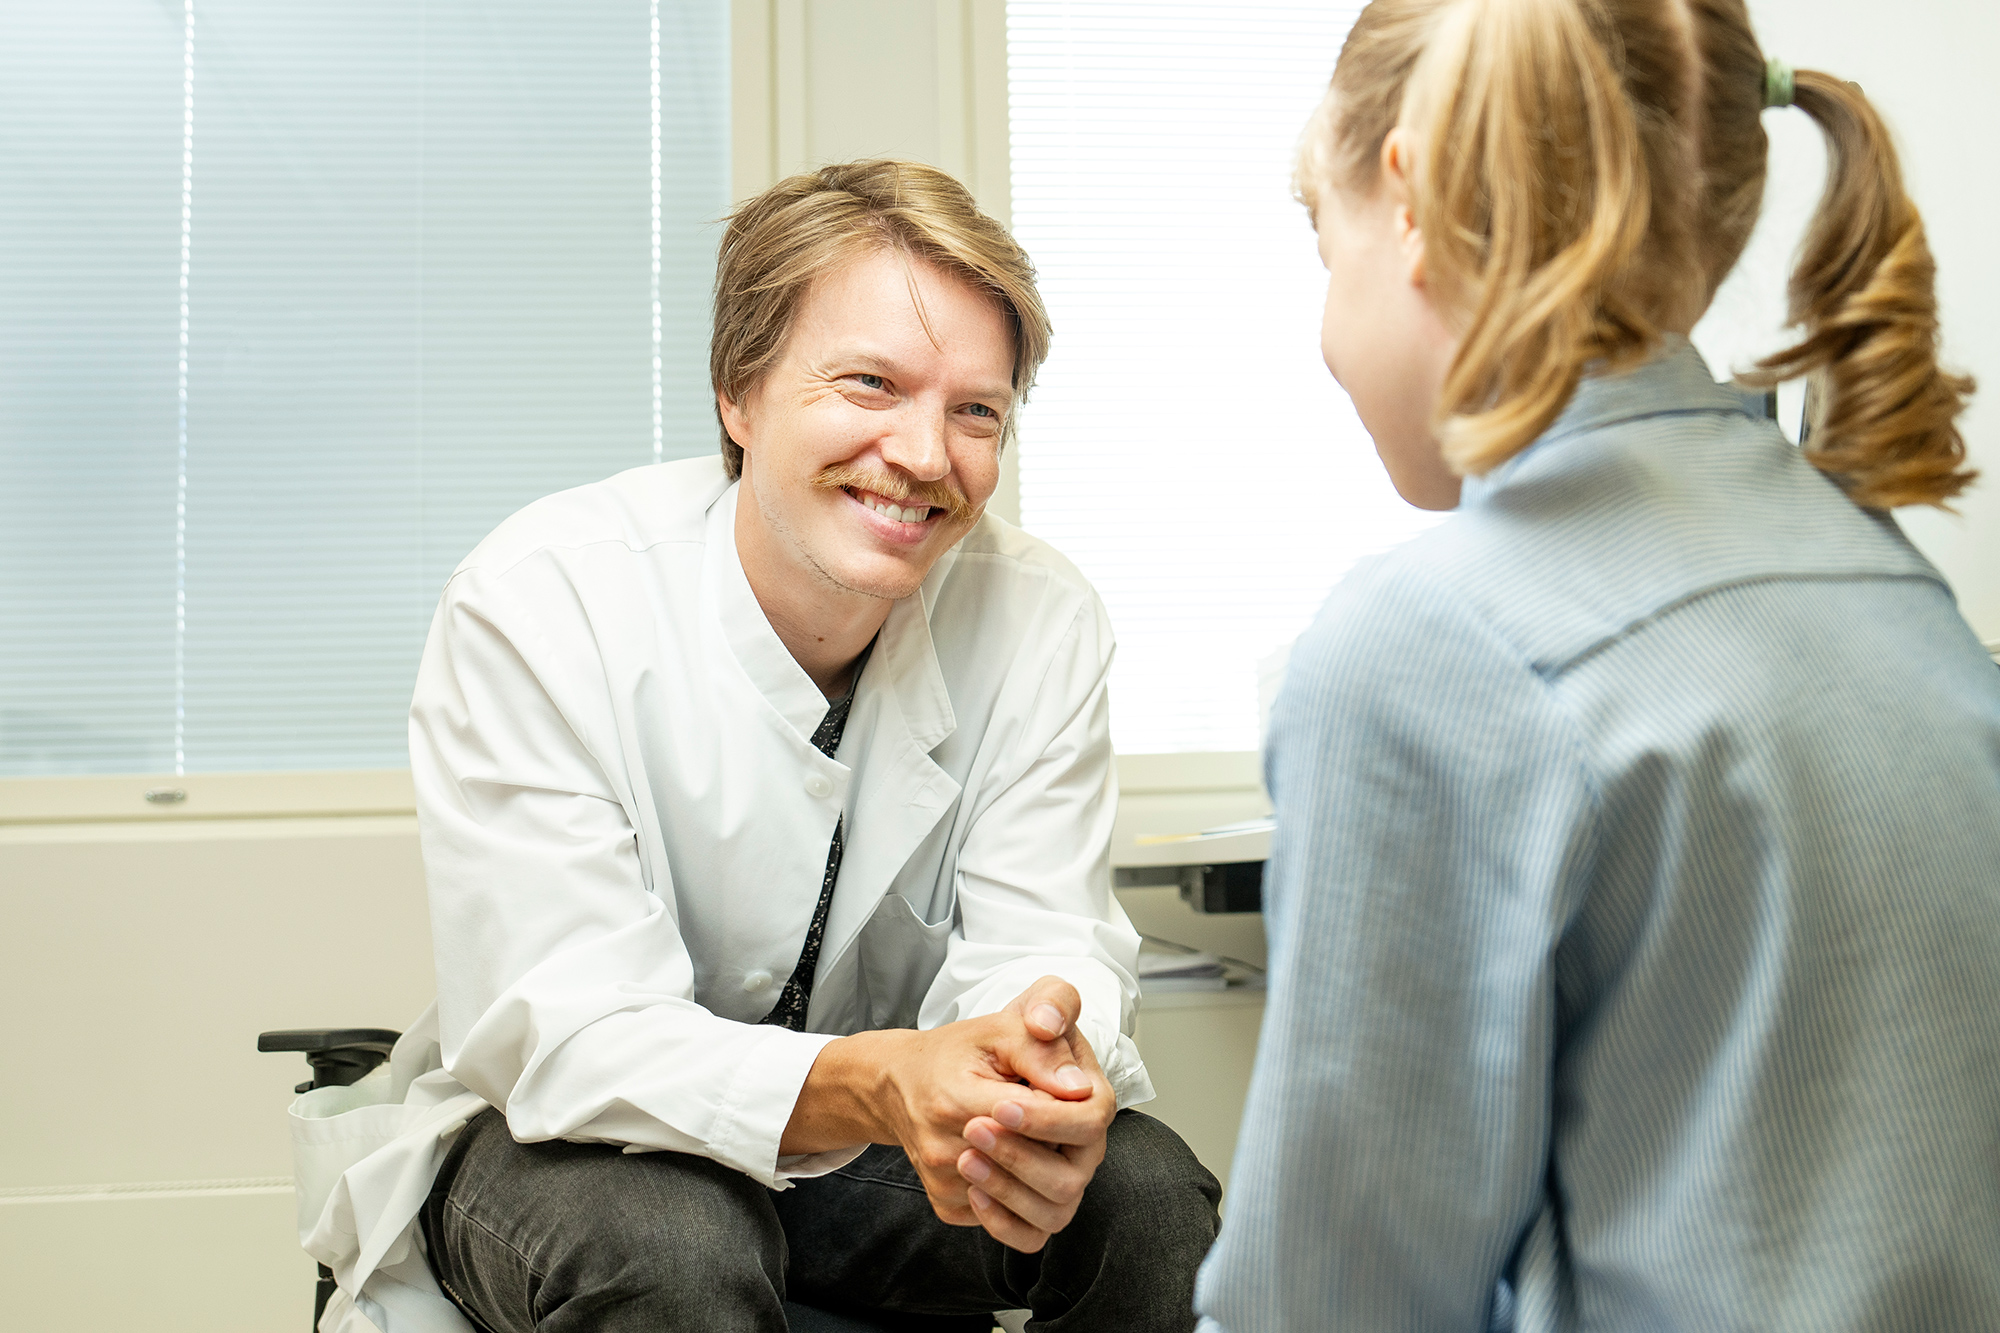 PK Terveyden lääkäri Johannes Kuitunen tutkii lapsiasiakasta. Lastenlääkäri eli pediatri tutkii ja hoitaa alle 18-vuotiaita lapsia ja nuoria. Myös PK Terveyden yleislääkärin vastaanotolle voi tulla lapsen kanssa.